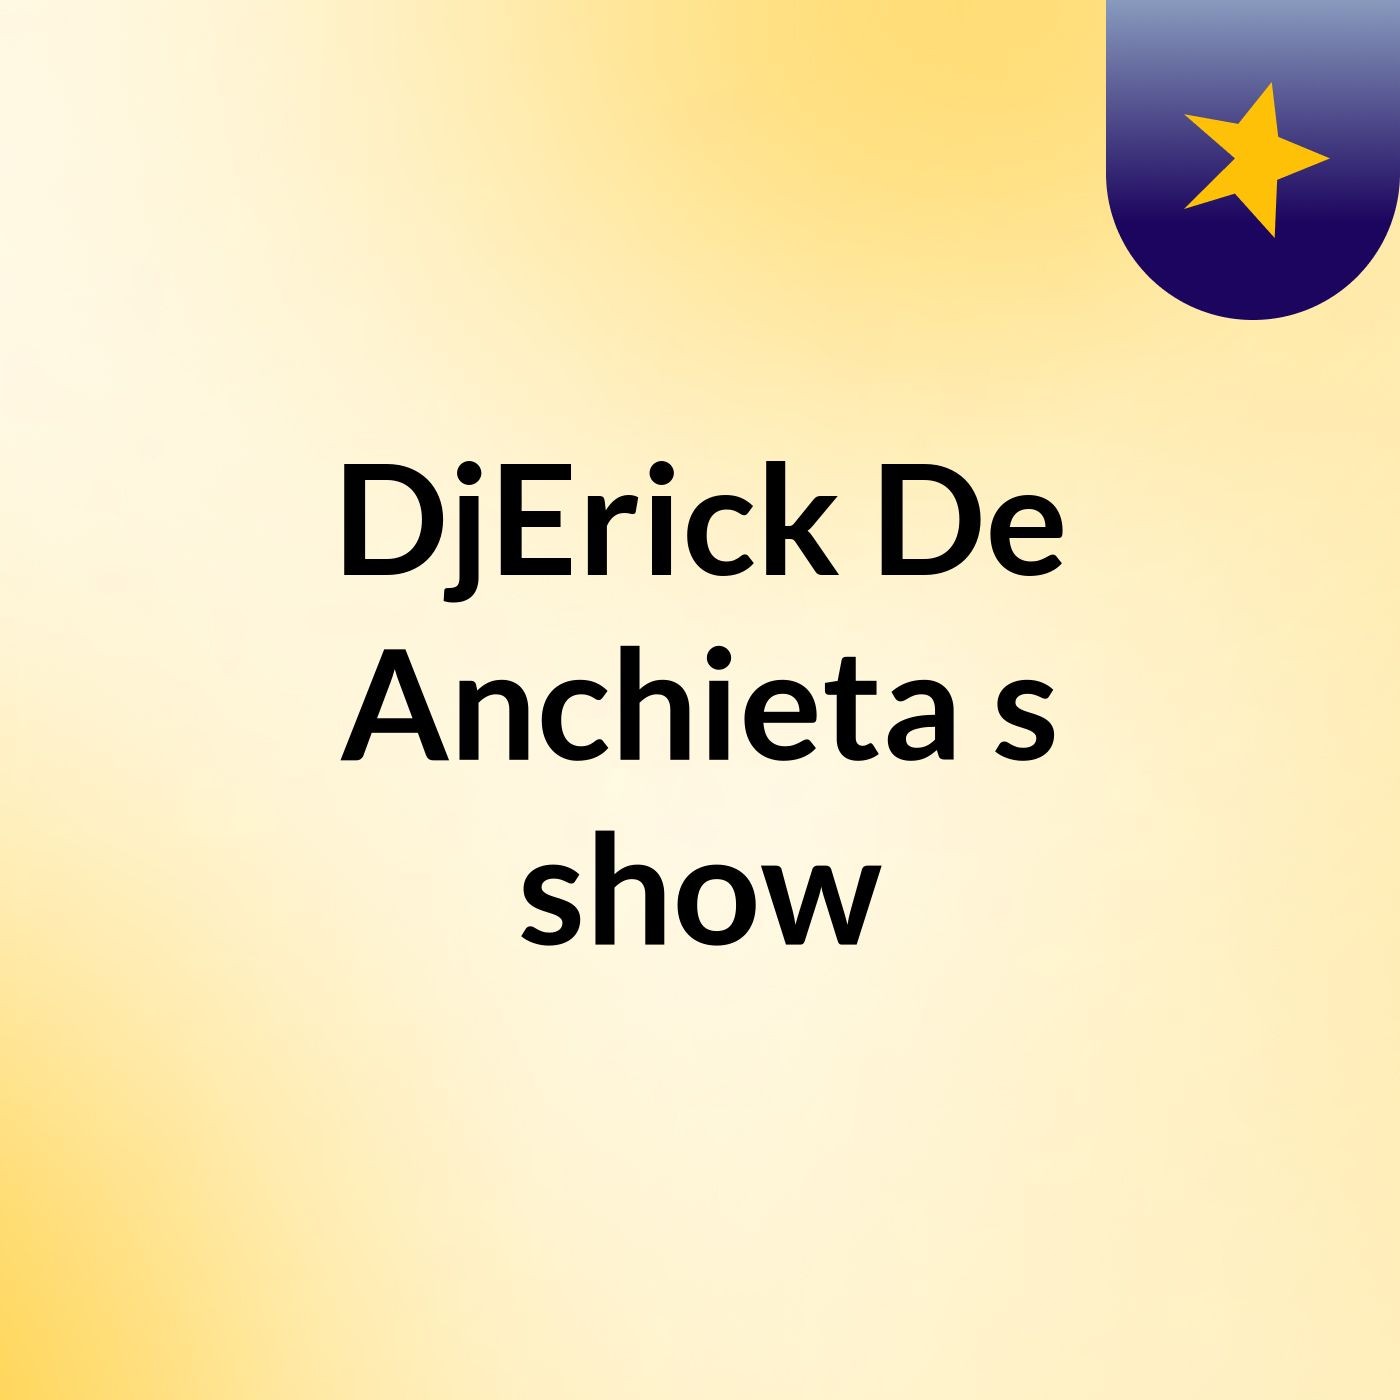 DjErick De Anchieta's show